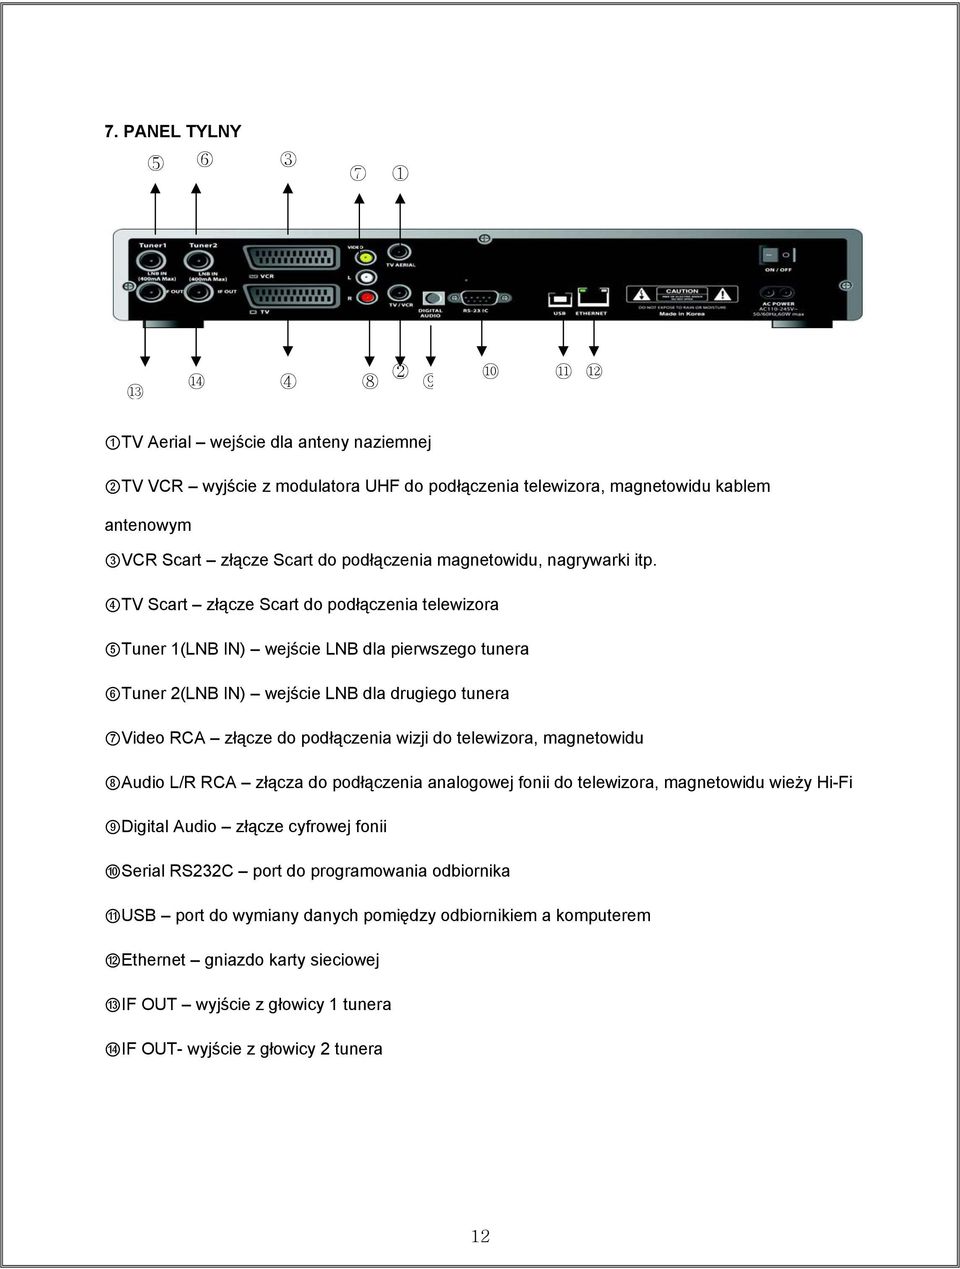 4TV Scart złącze Scart do podłączenia telewizora 5Tuner 1(LNB IN) wejście LNB dla pierwszego tunera 6Tuner 2(LNB IN) wejście LNB dla drugiego tunera 7Video RCA złącze do podłączenia wizji do